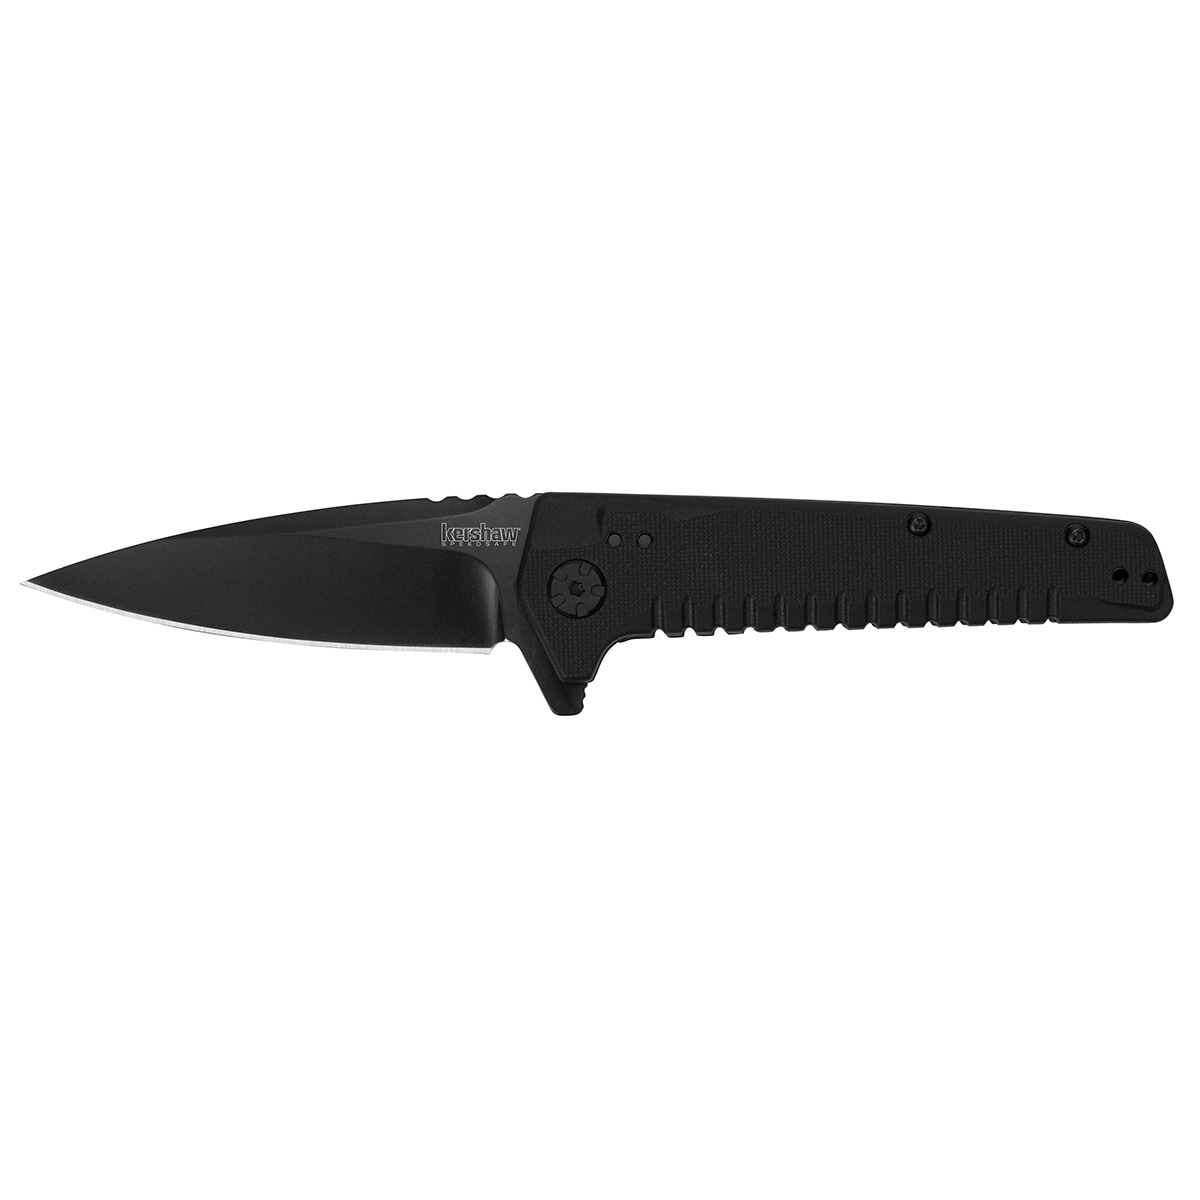 Складной полуавтоматический нож Kershaw Fatback K1935, сталь 8Cr13MoV, рукоять пластик полуавтоматический складной нож utilitac assisted клинок   рукоять   g 10